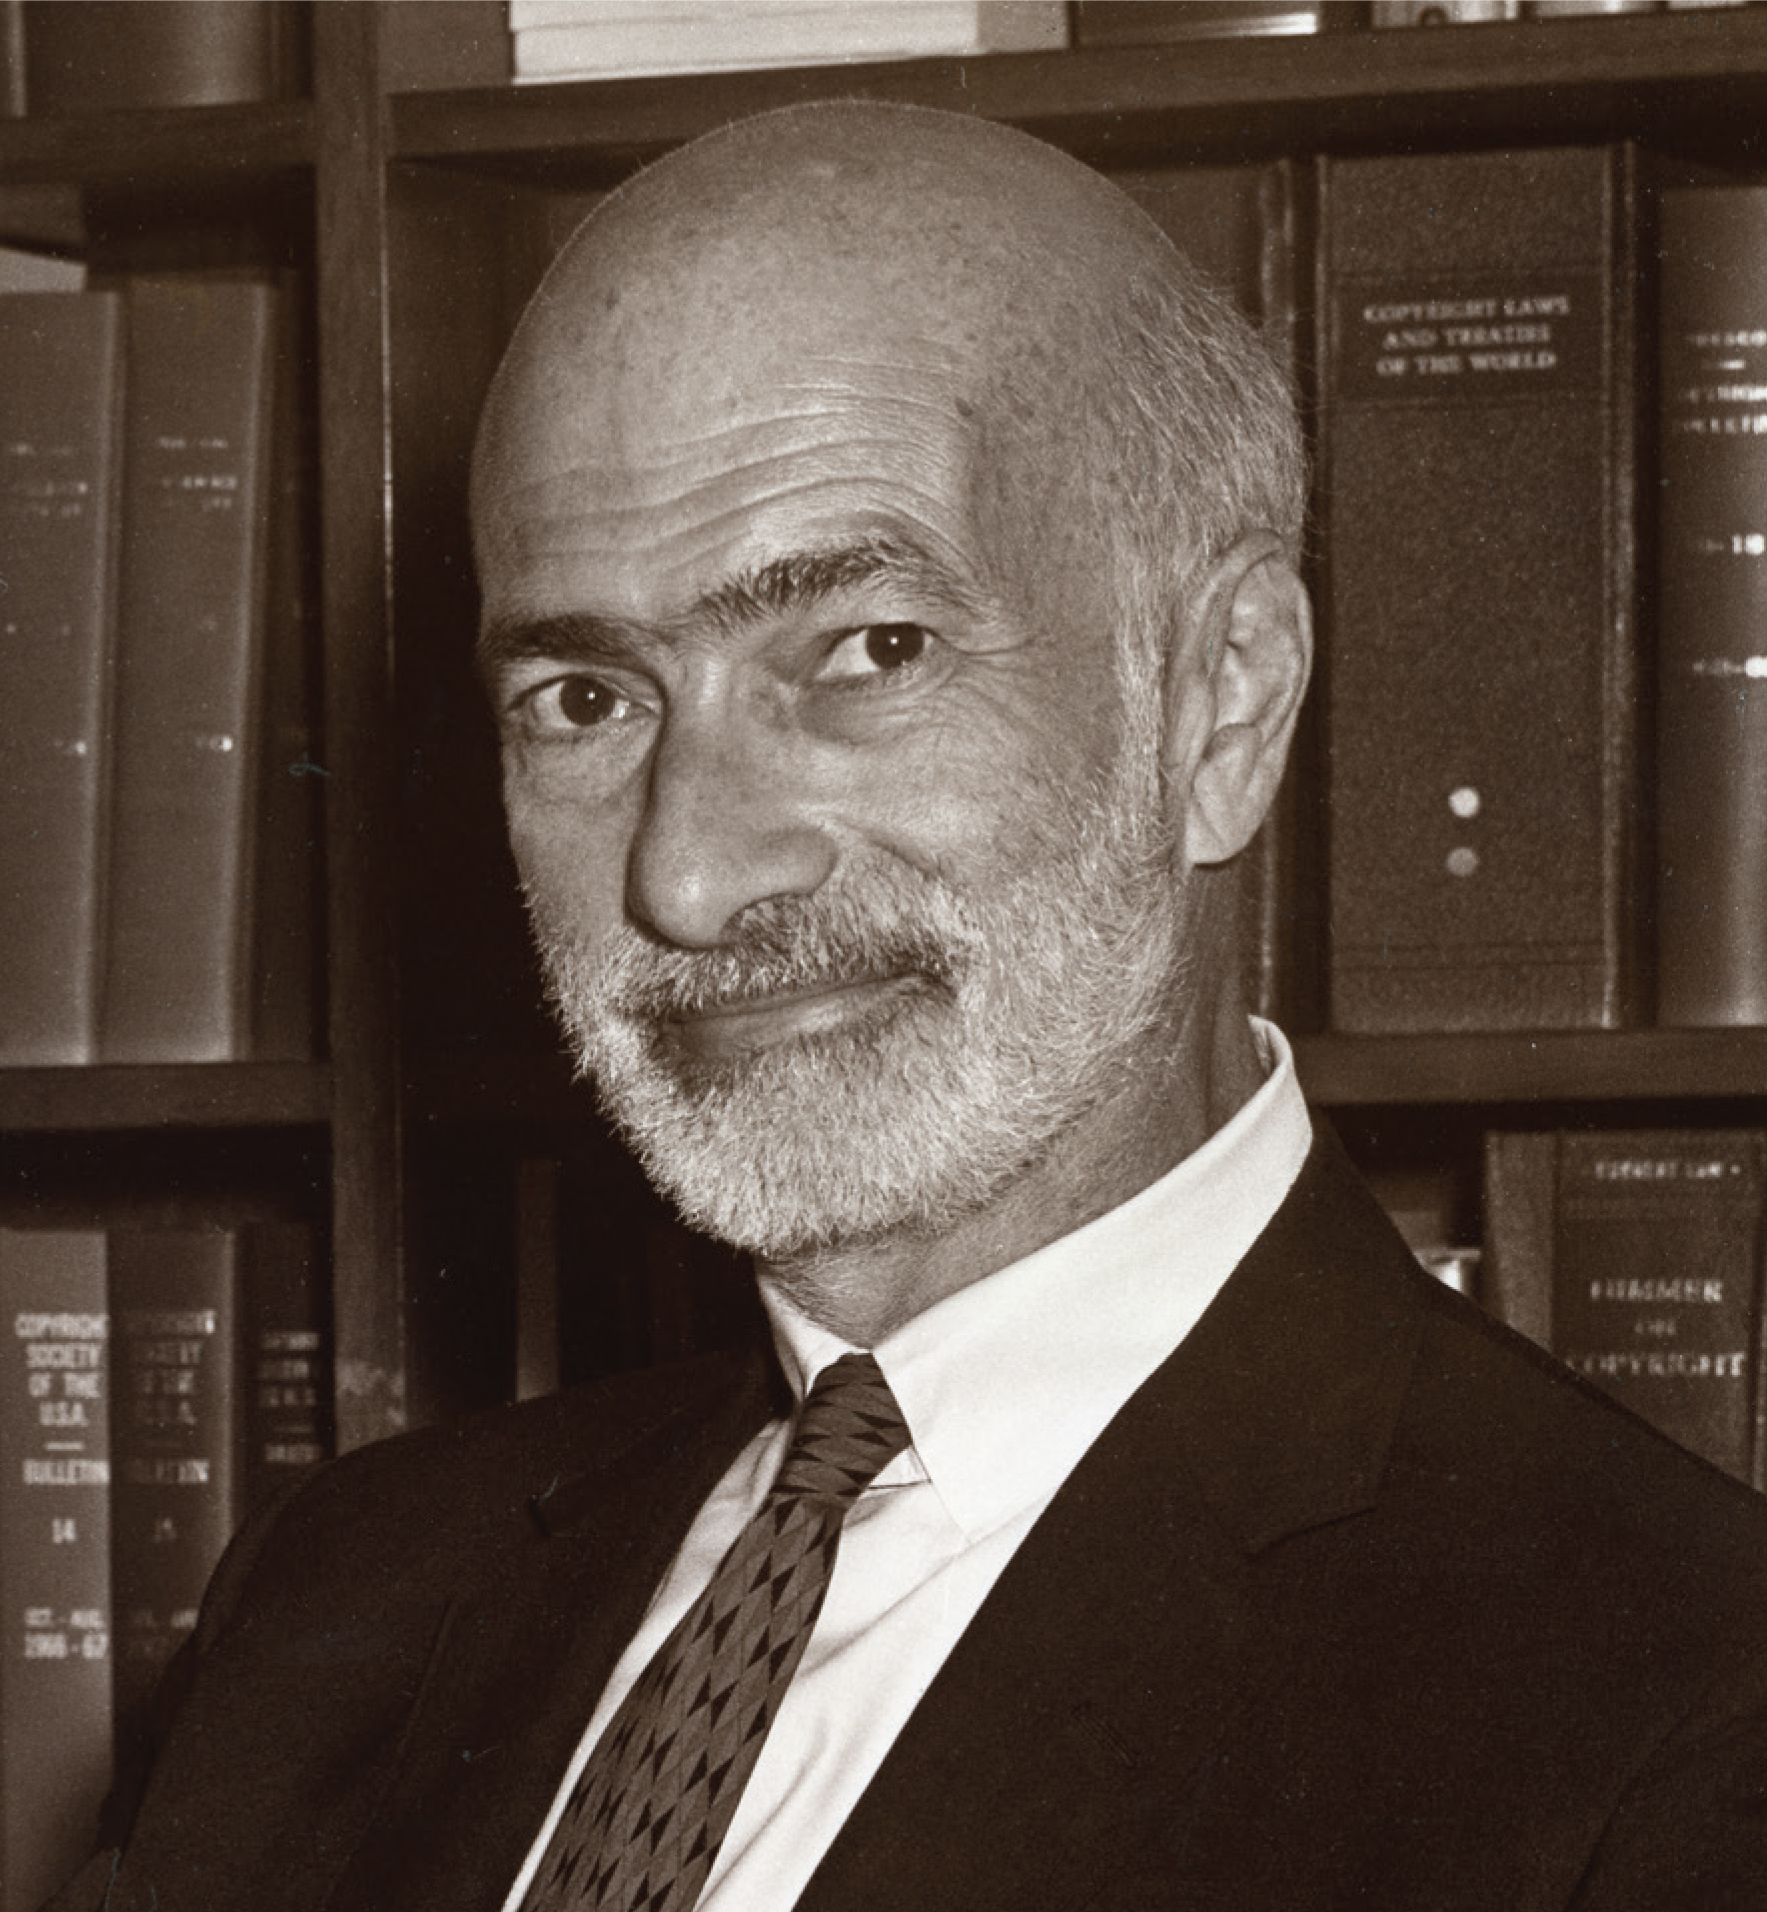 Abraham L. Kaminstein, 6th Register